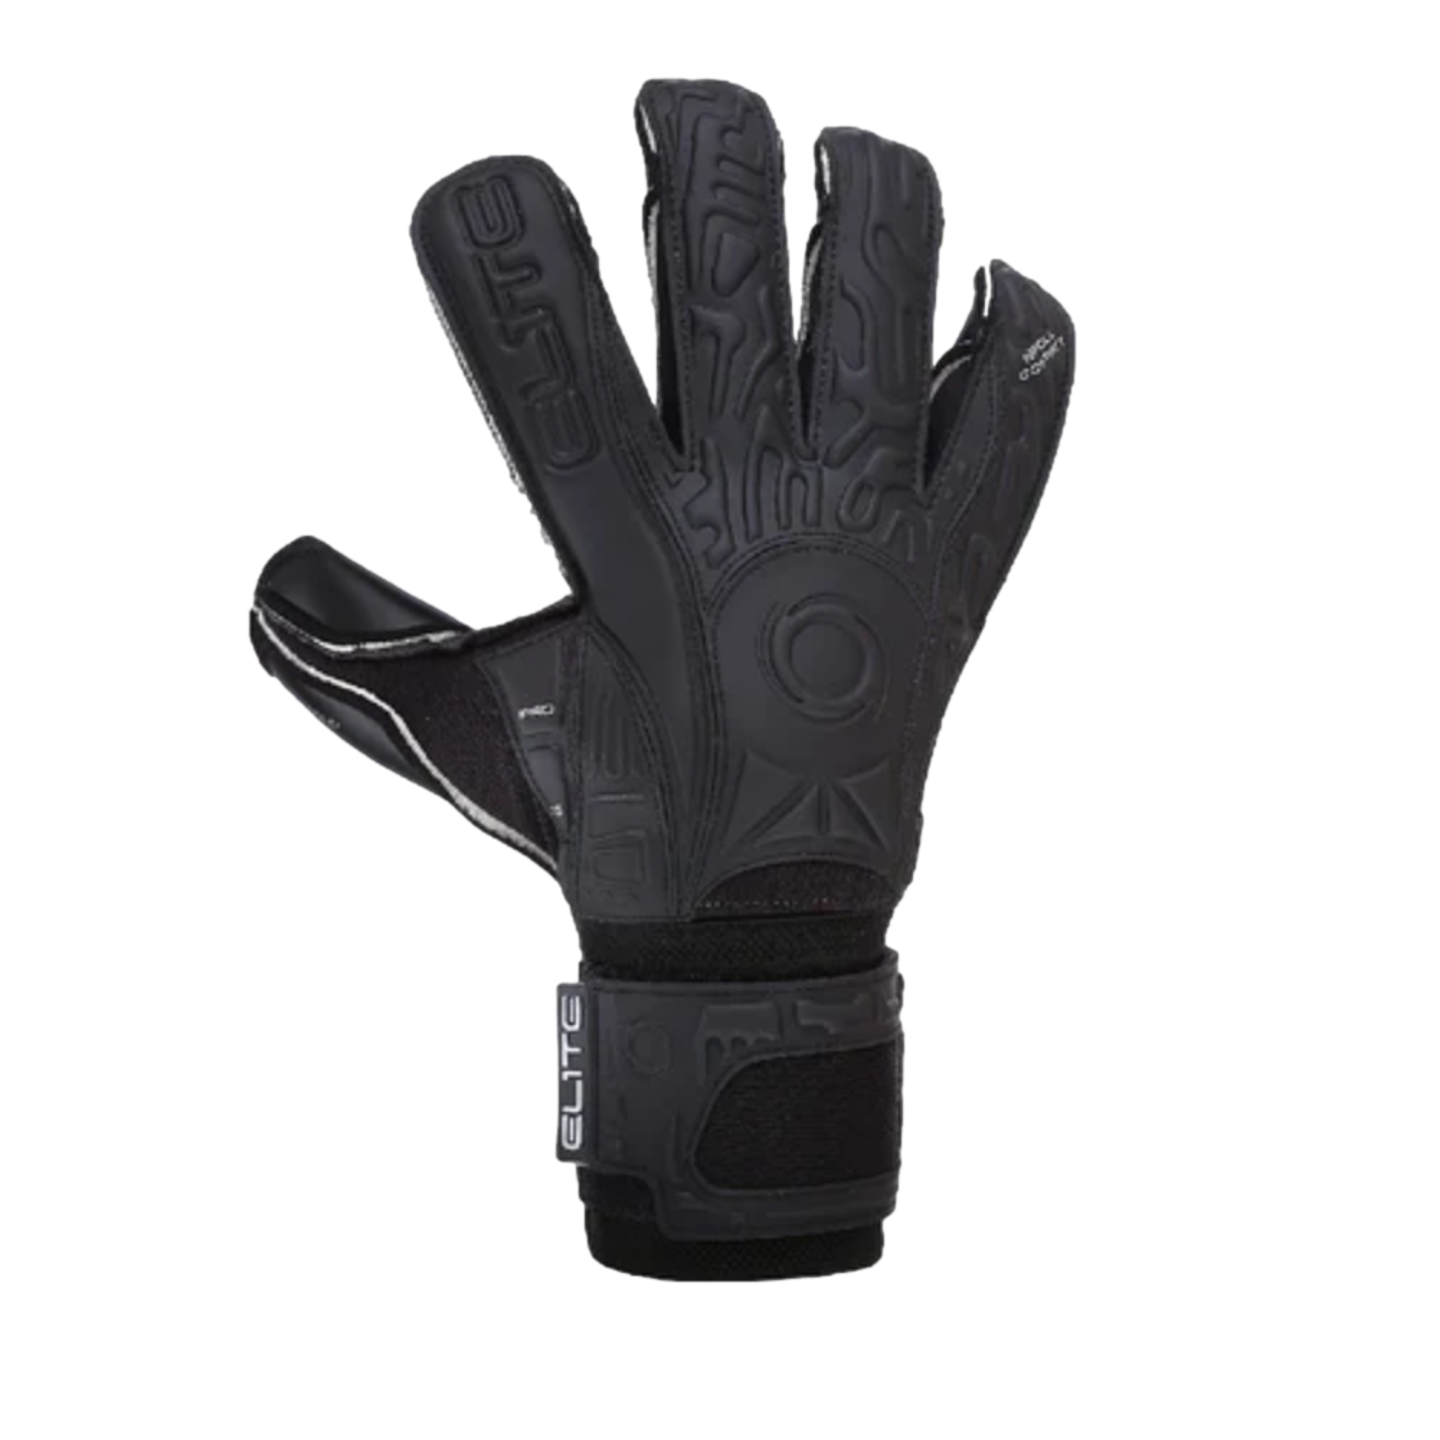 Elite Sport Black Solo Fingersave Goalkeeper Gloves